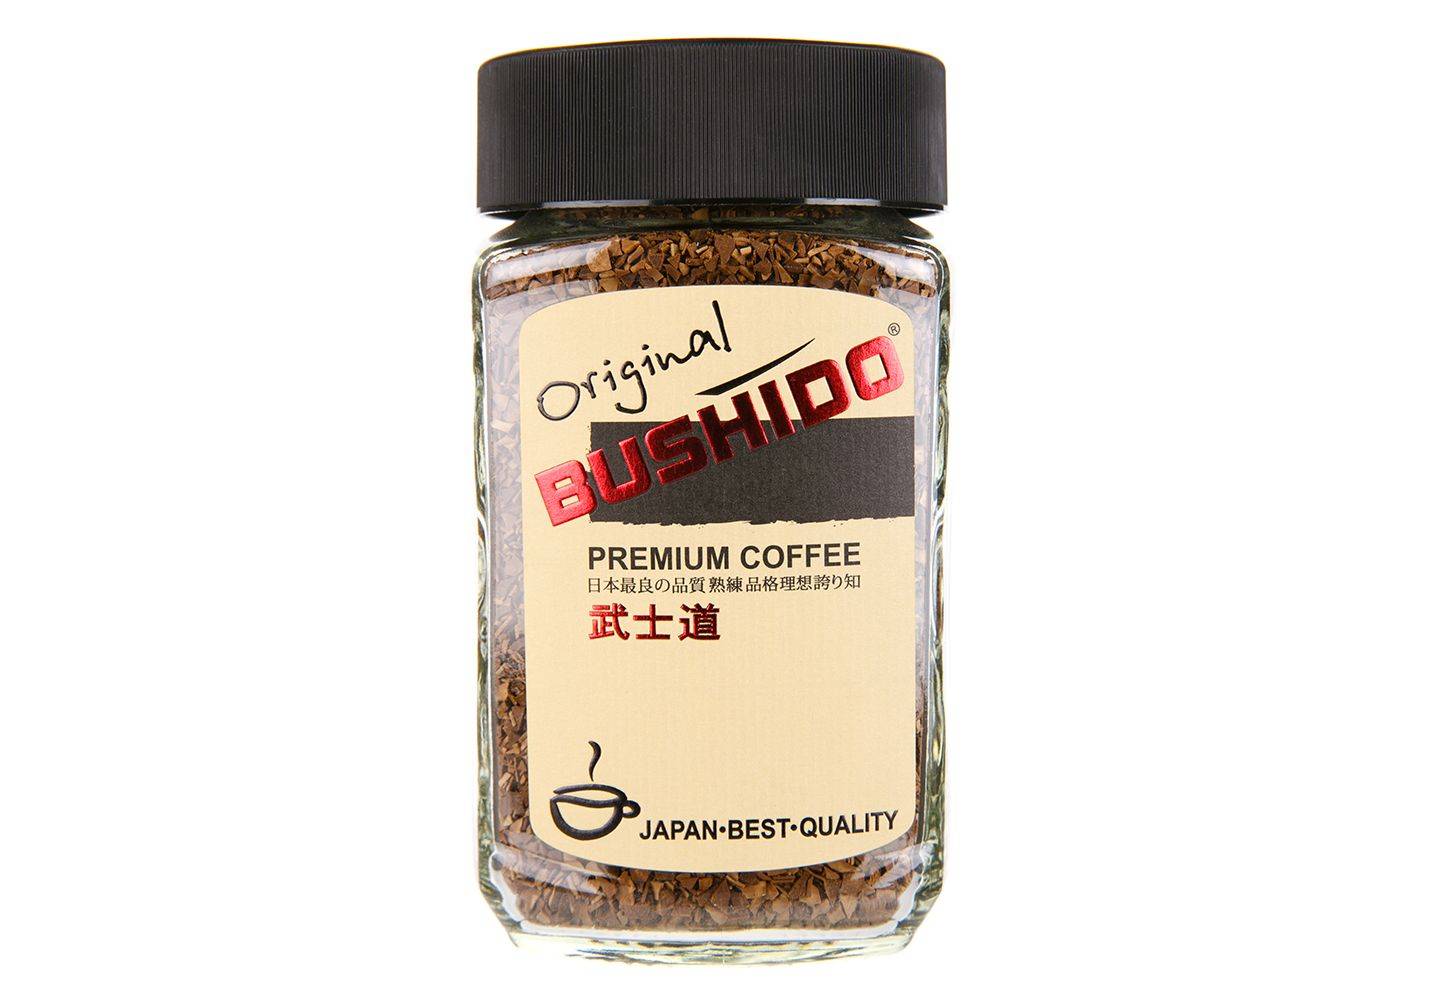 Кофе egoiste noir или кофе bushido - что лучше, сравнение, что выбрать 2020